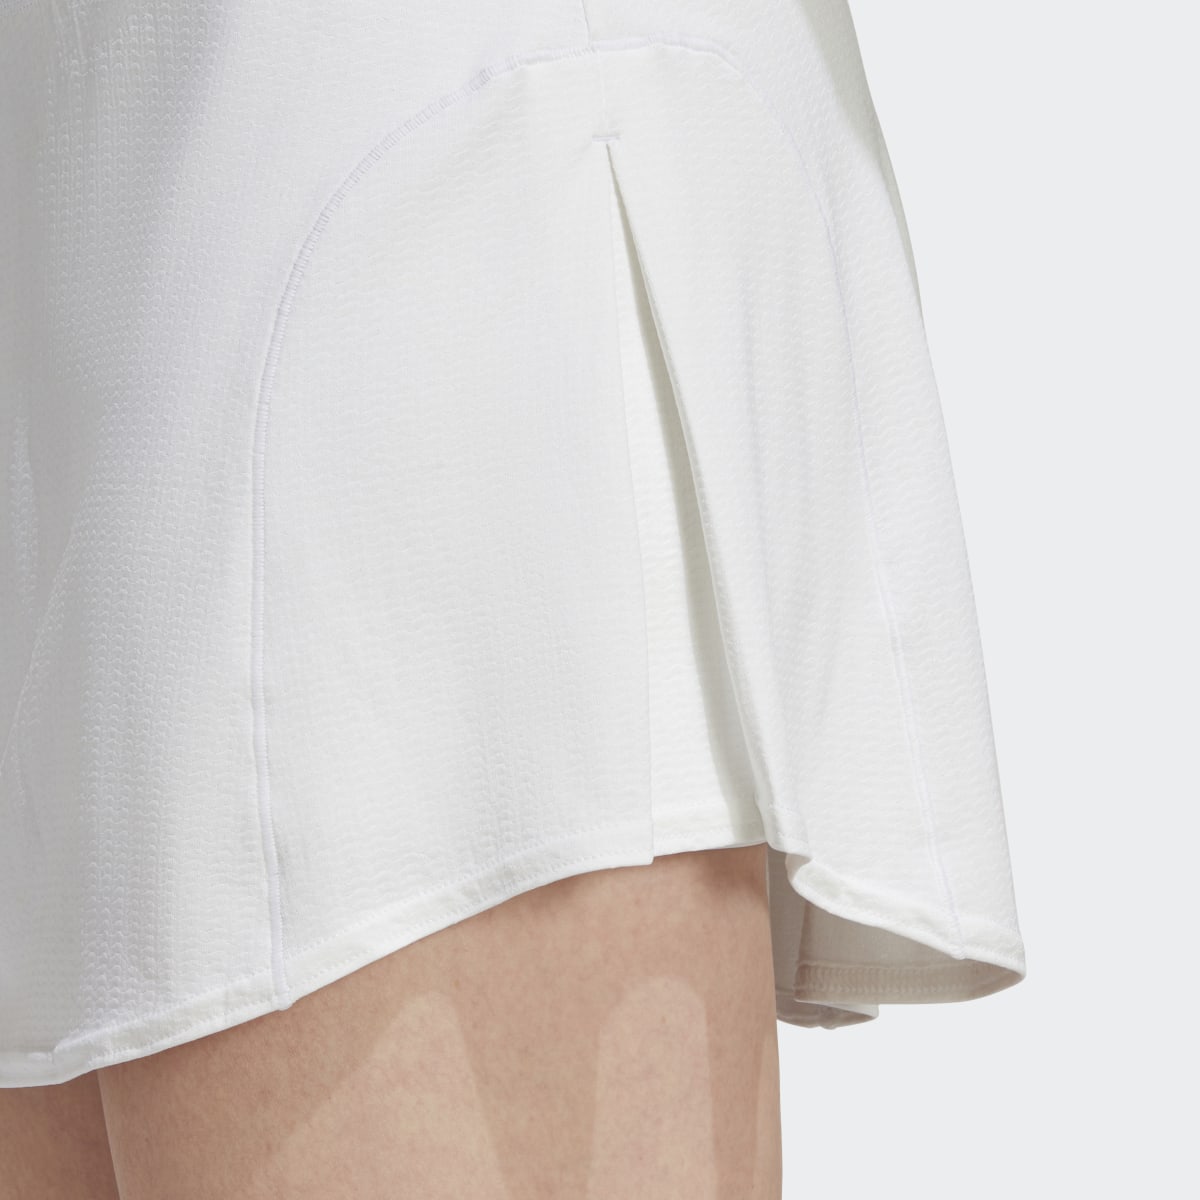 Adidas Tennis Match Skirt. 10